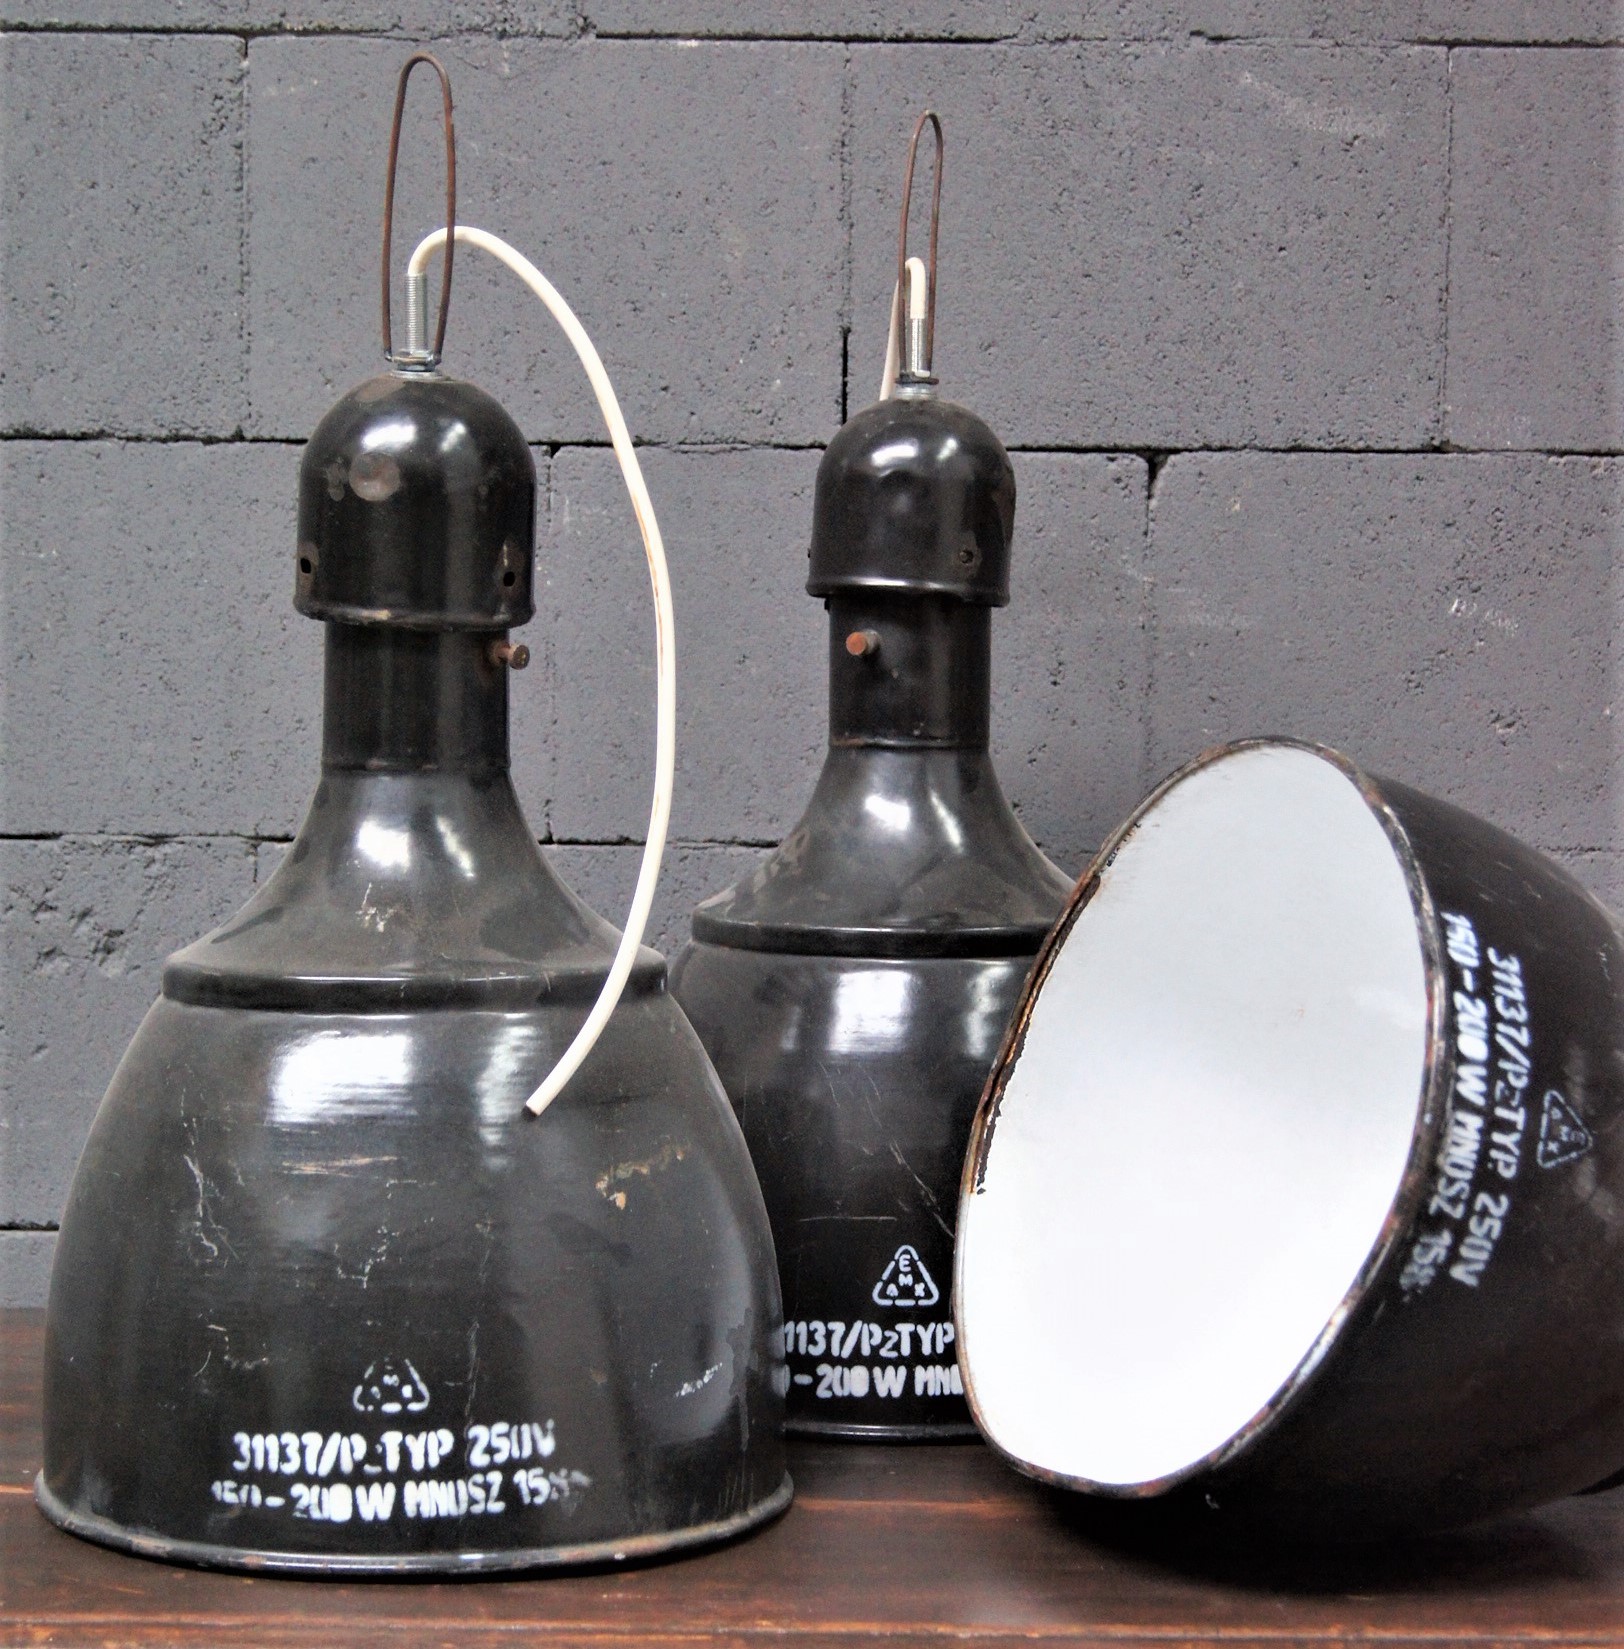 Vaag Over instelling Sitcom Shop nu stoere oude (industriële) lampen bij Old BASICS! | Old BASICS